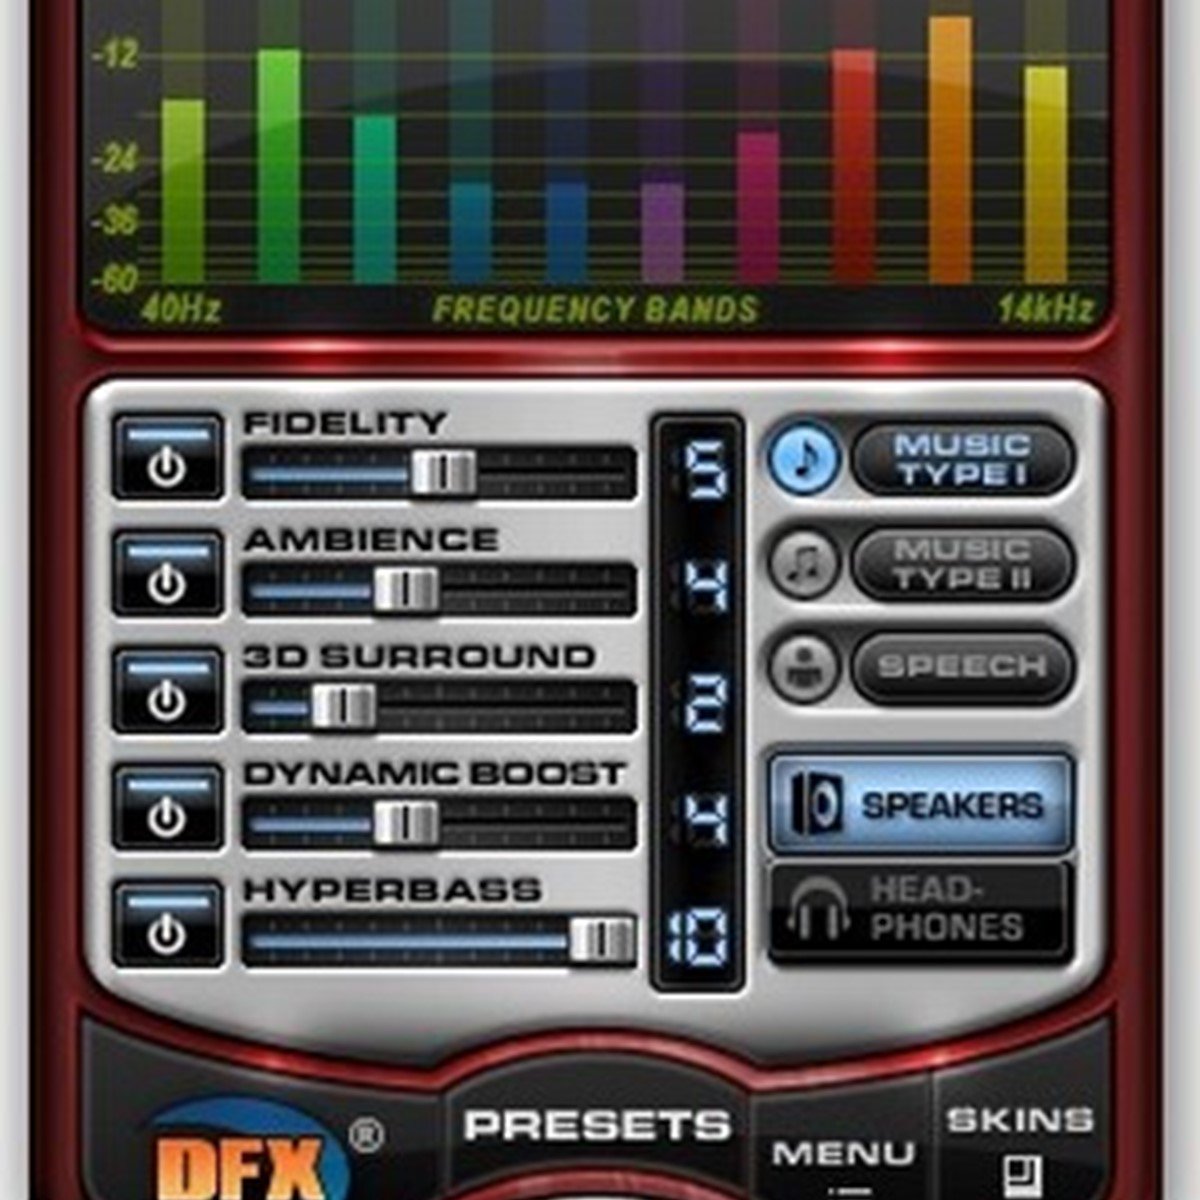 dfx audio enhancer 11.400 serial